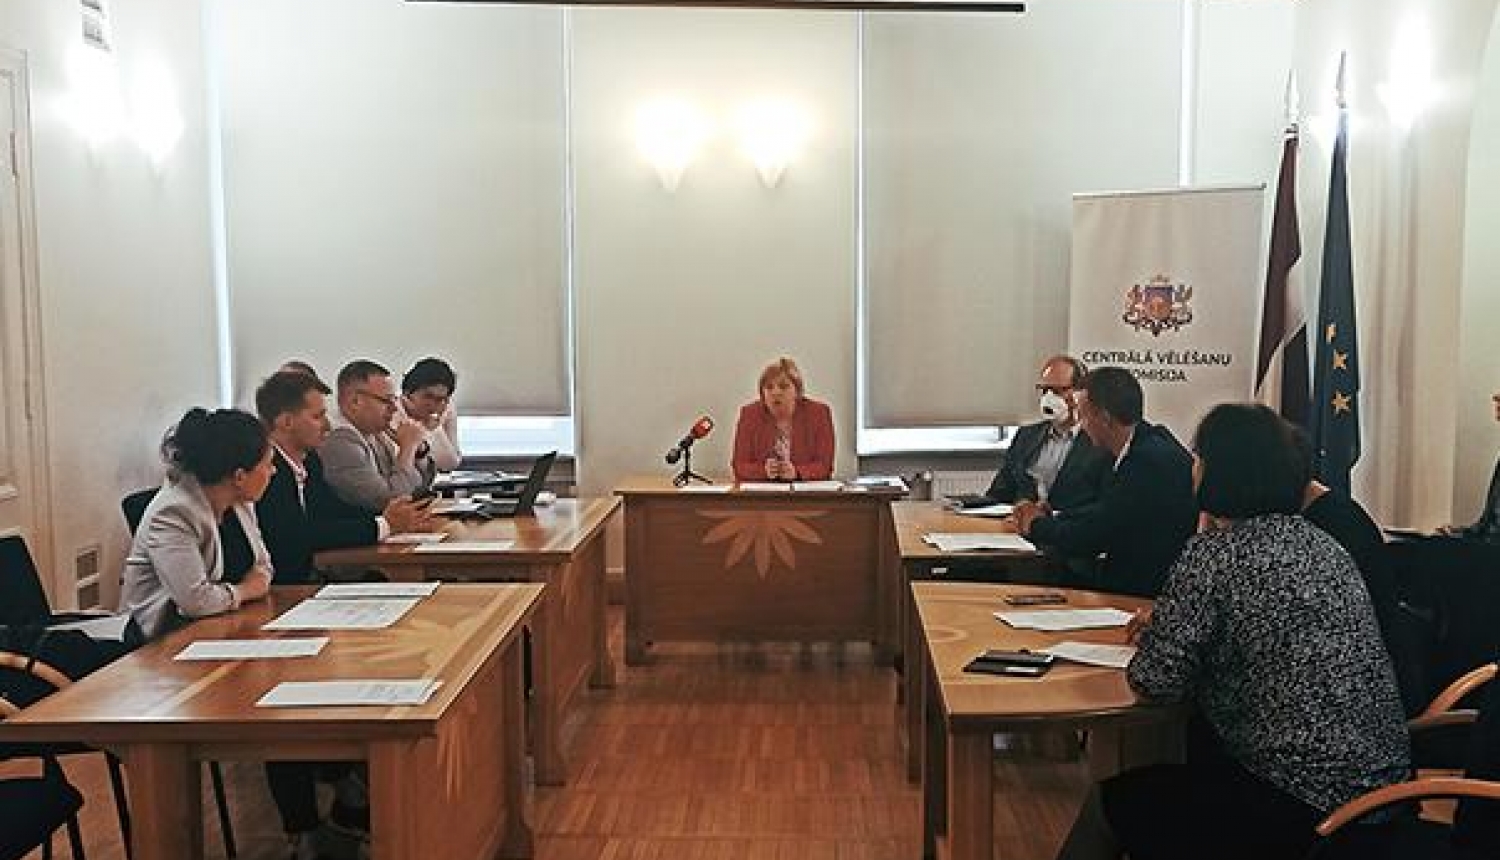 CVK piektdien izsludinās Varakļānu novada un Rēzeknes novada domes vēlēšanas